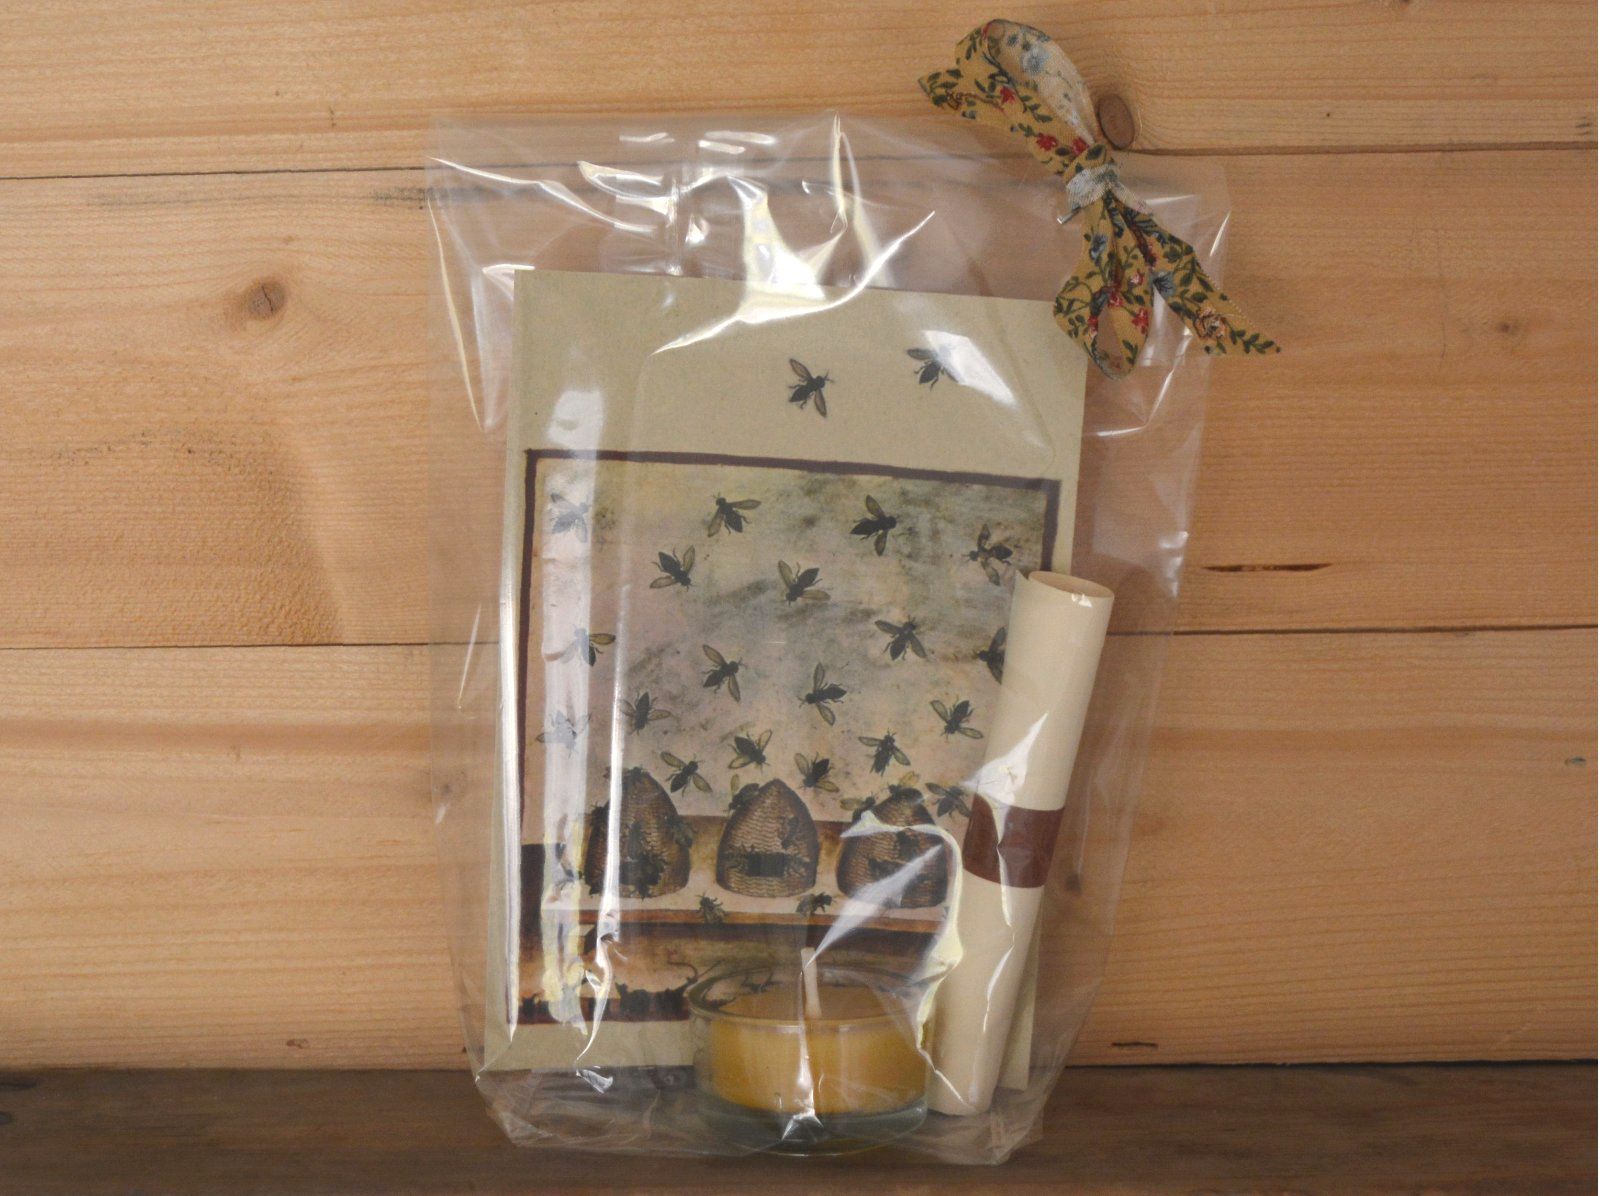 Geschenkig verpackte Postkarte mit Bienenstock aus einem antiken Buch, dazu ein Bienenwachs-Teelicht, Blütensamen-Päckchen und ein Blatt mit dem Spruch.